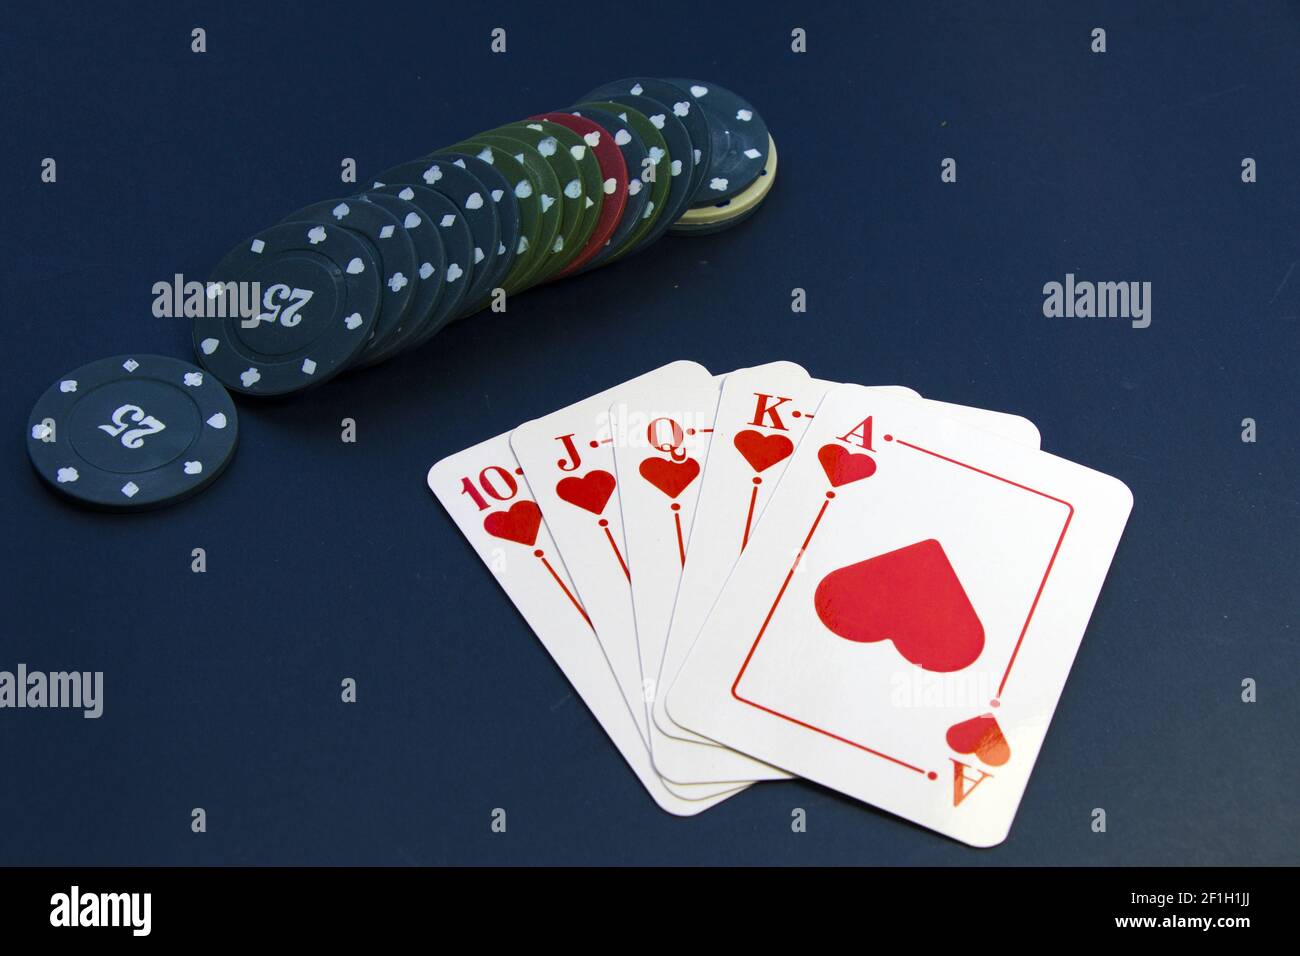 Eine Draufsicht auf Herz Royal Flush Karten und Chips Gleichmäßig auf einem Pokertisch angeordnet Stockfoto